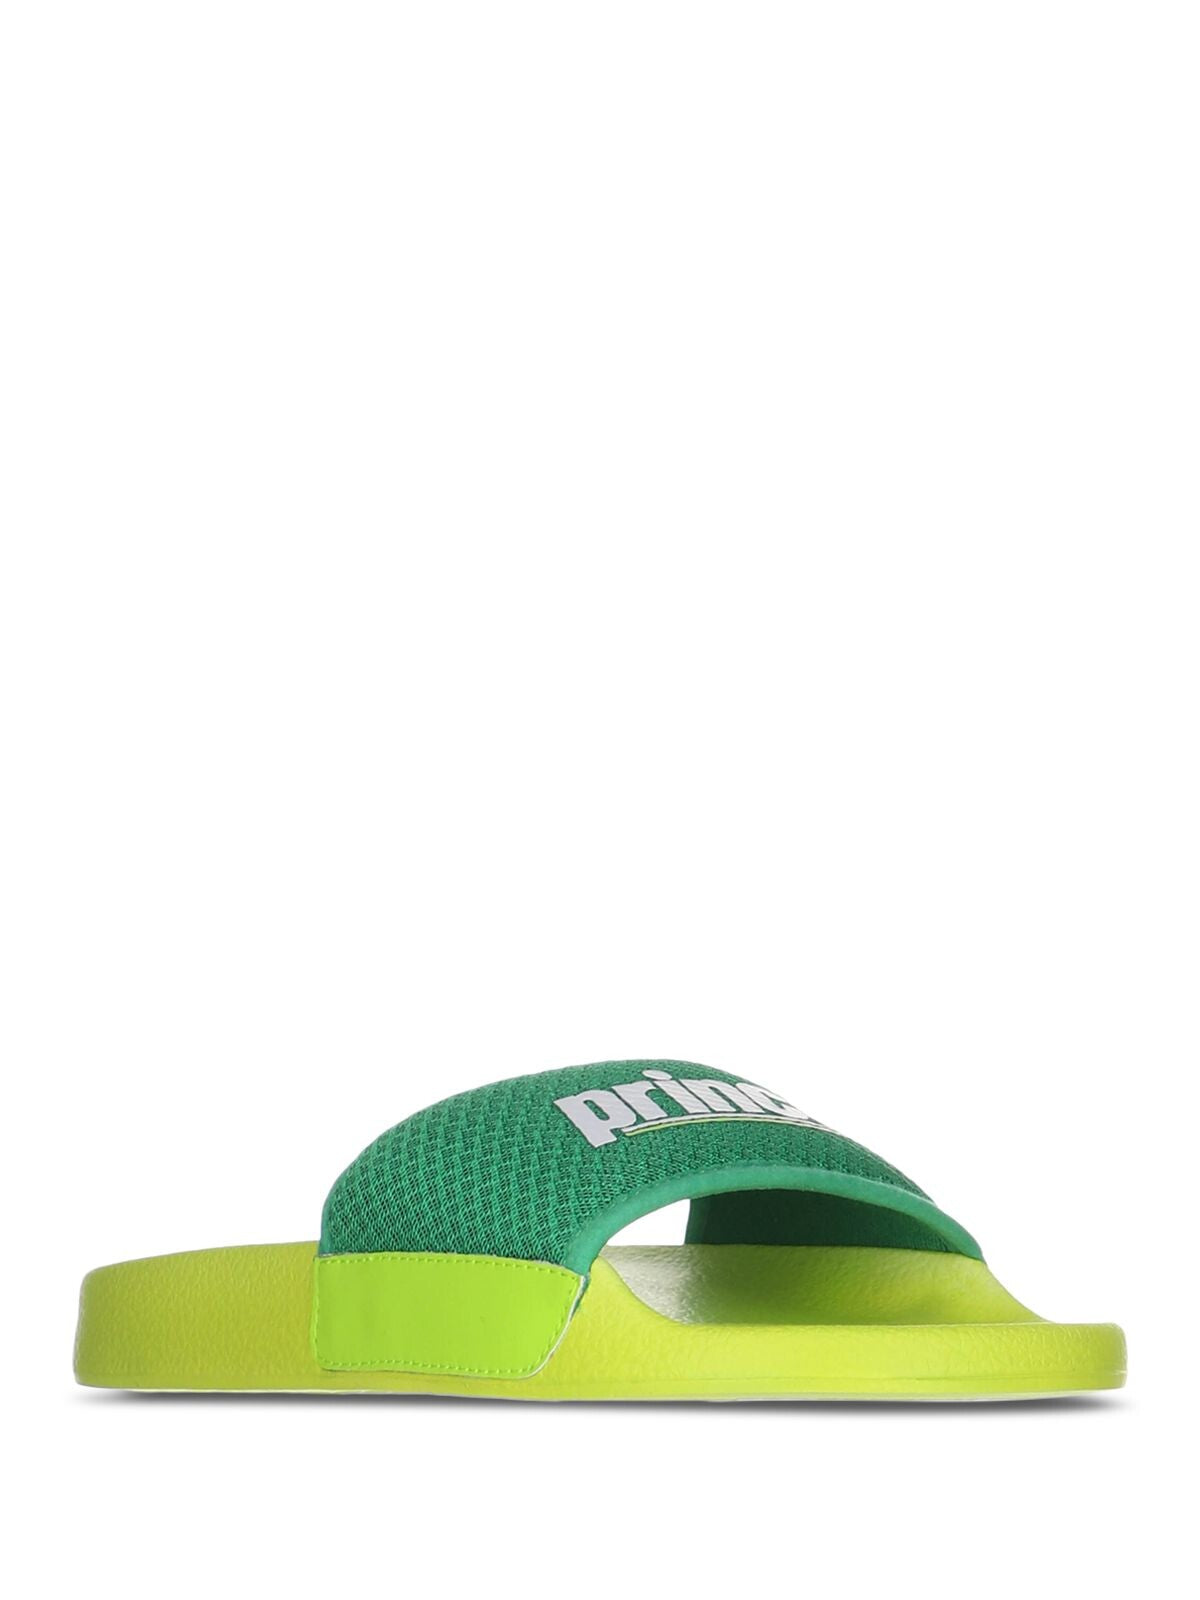 PRINCE Womens Green Logo Comfort Prism Round Toe Platform Slip On Slide Sandals Shoes 41 M